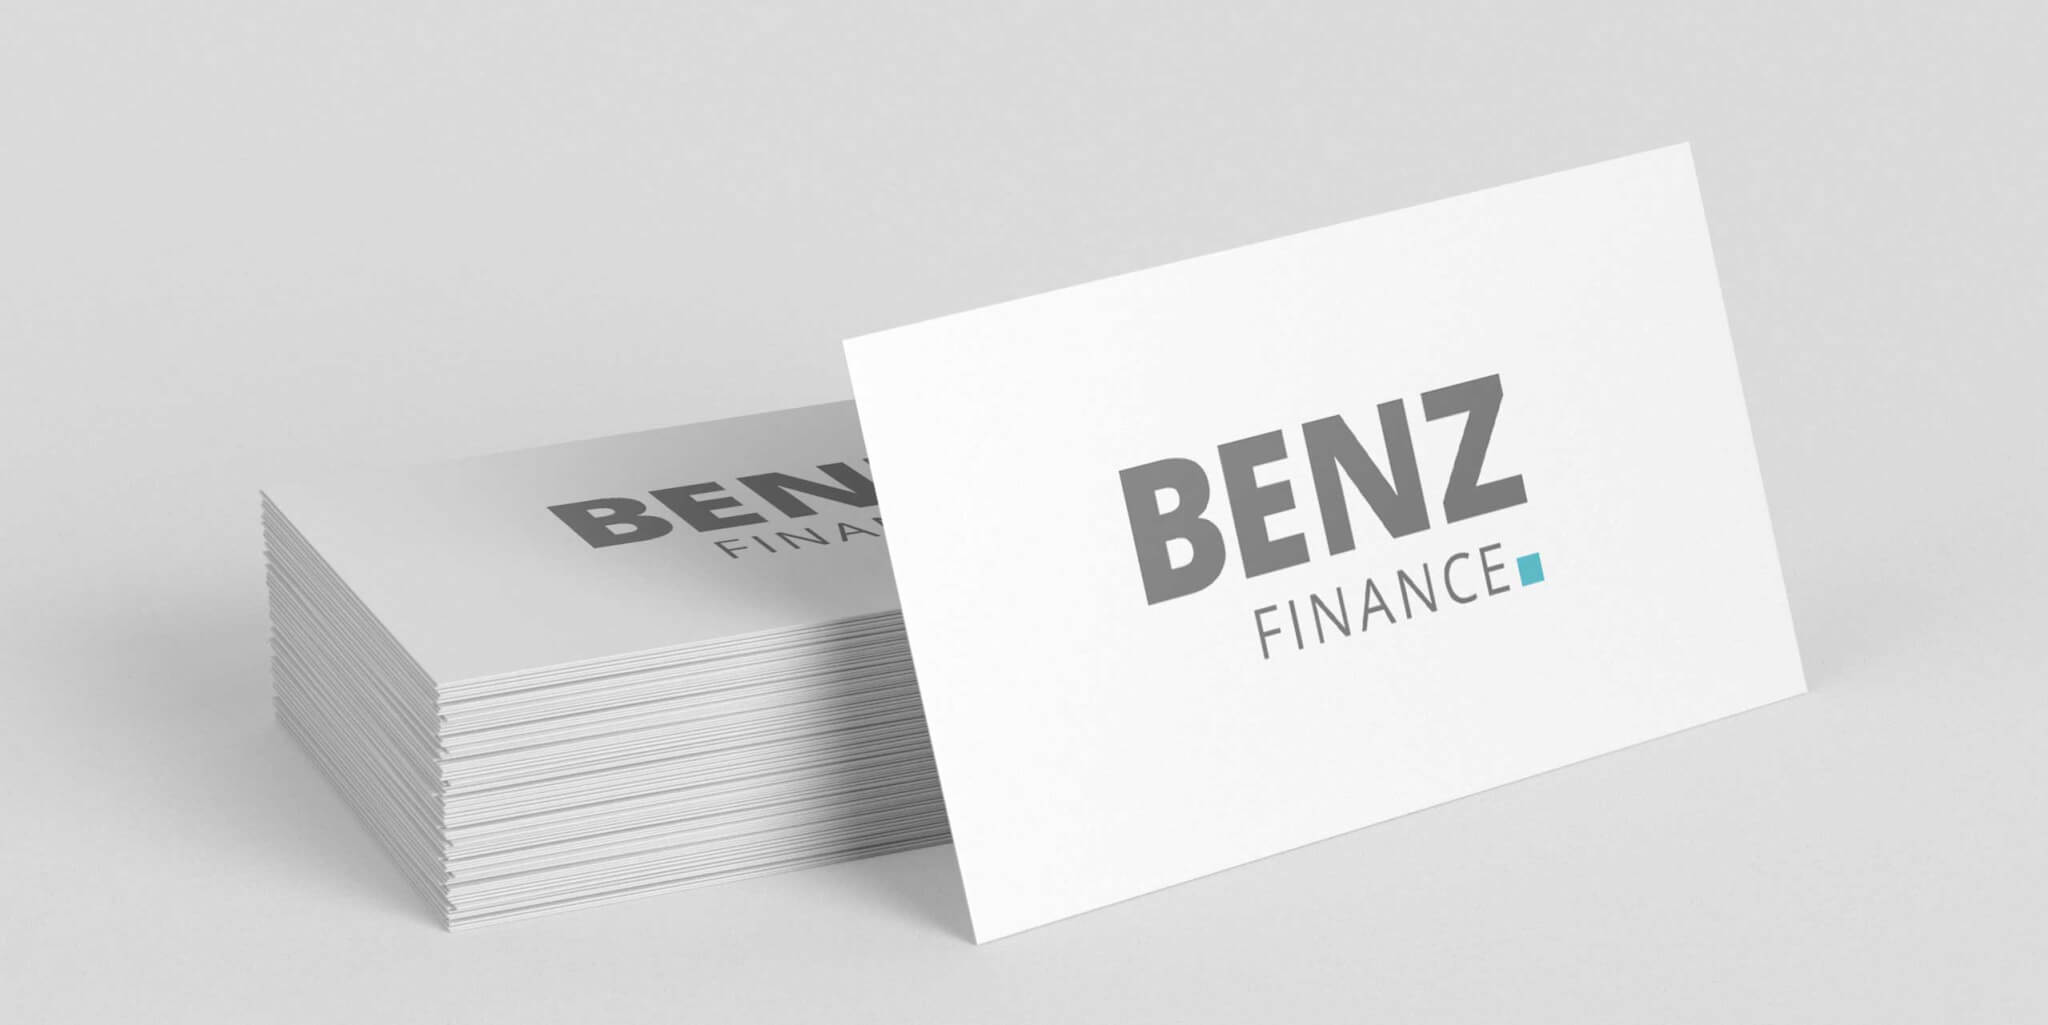 Visitenkarte mit Logo-Design des Frankfurt Startup Benz-Finance aus Frankfurt